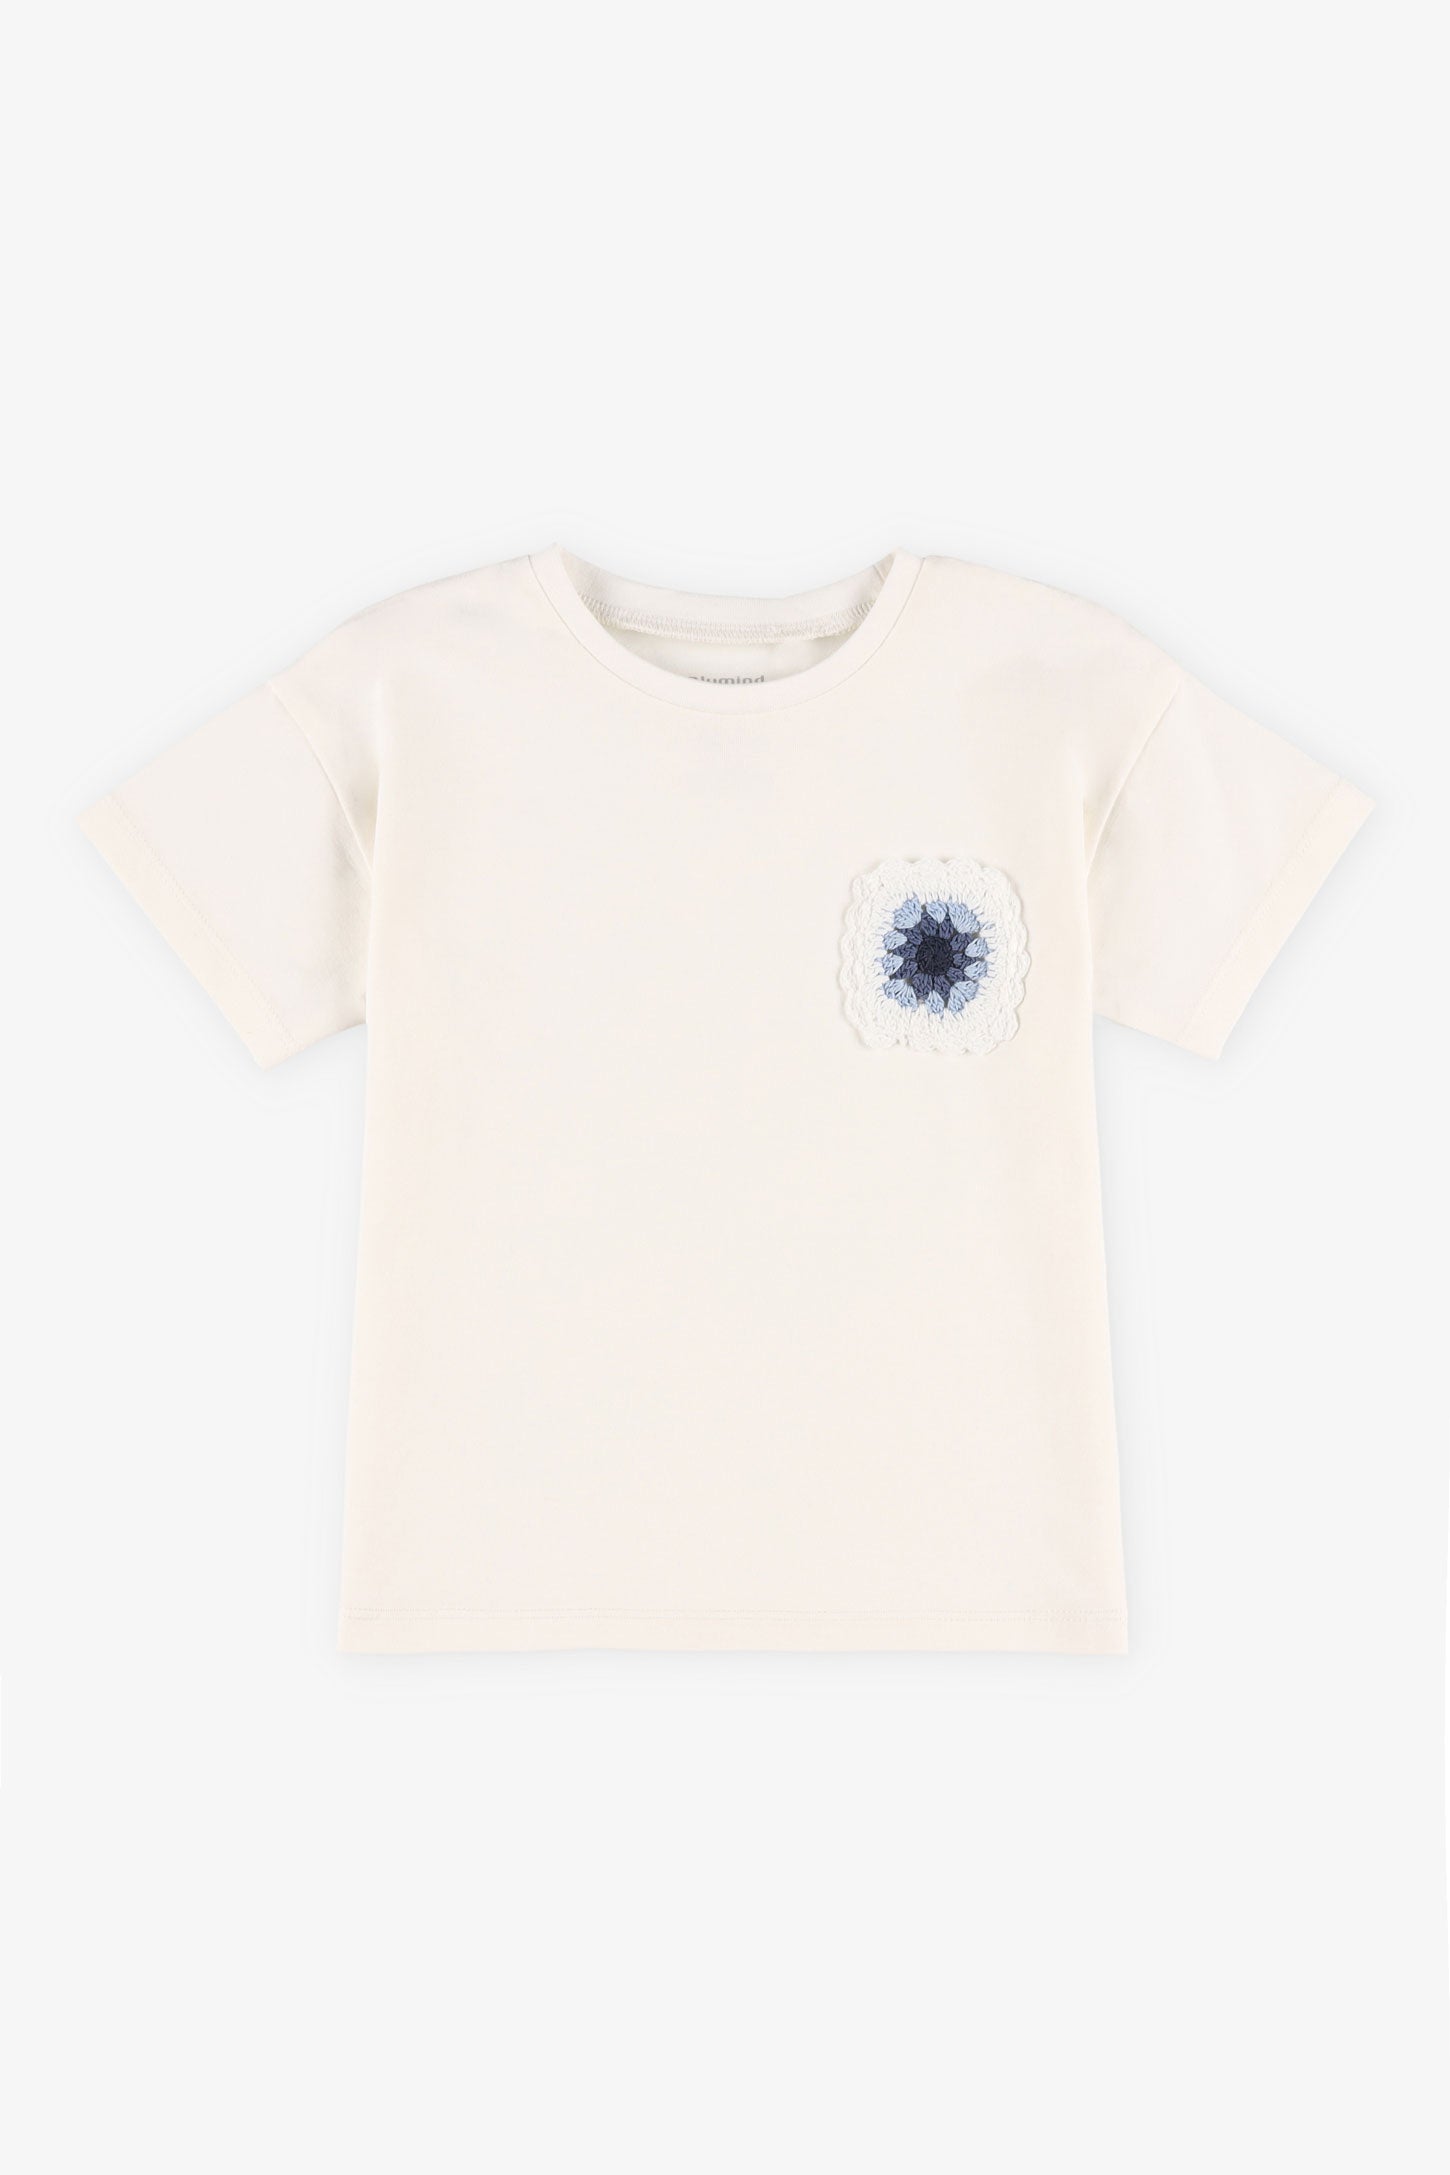 T-shirt coton avec appliqué crochet, 2T-3T - Bébé fille && BLANC